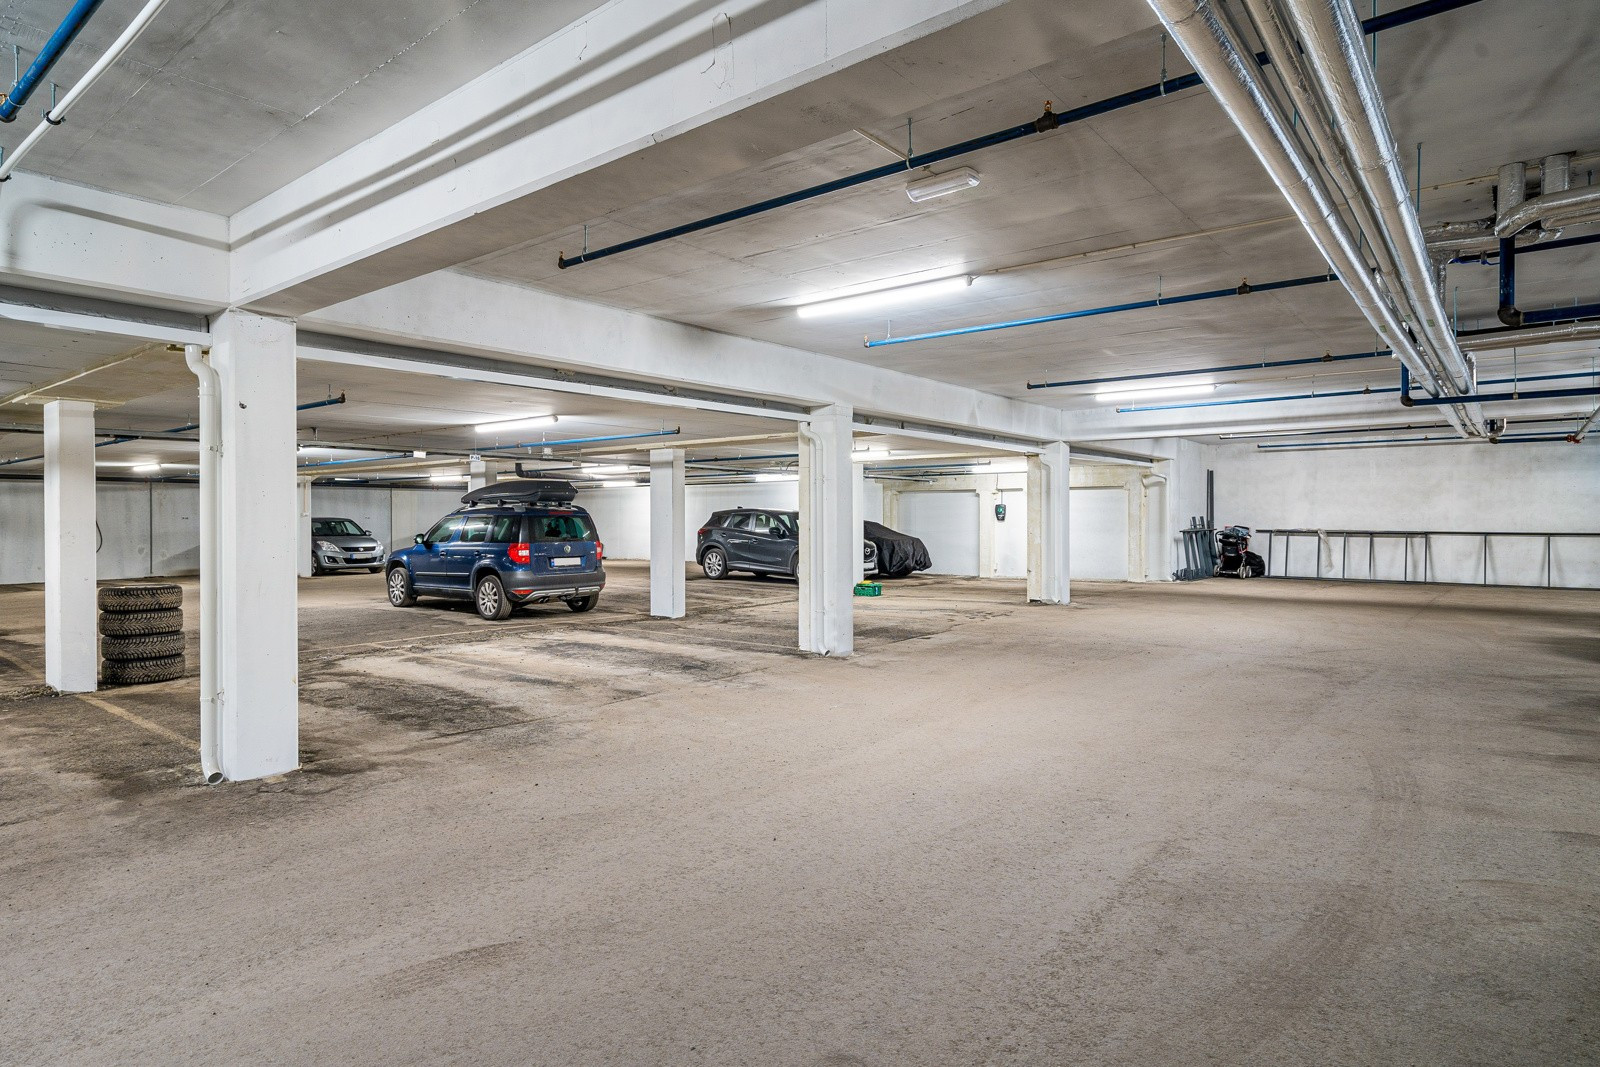 Fast parkering i felles garasjeanlegg. Det finnes også gjesteparkering i tilknytning til garasjeanlegget.